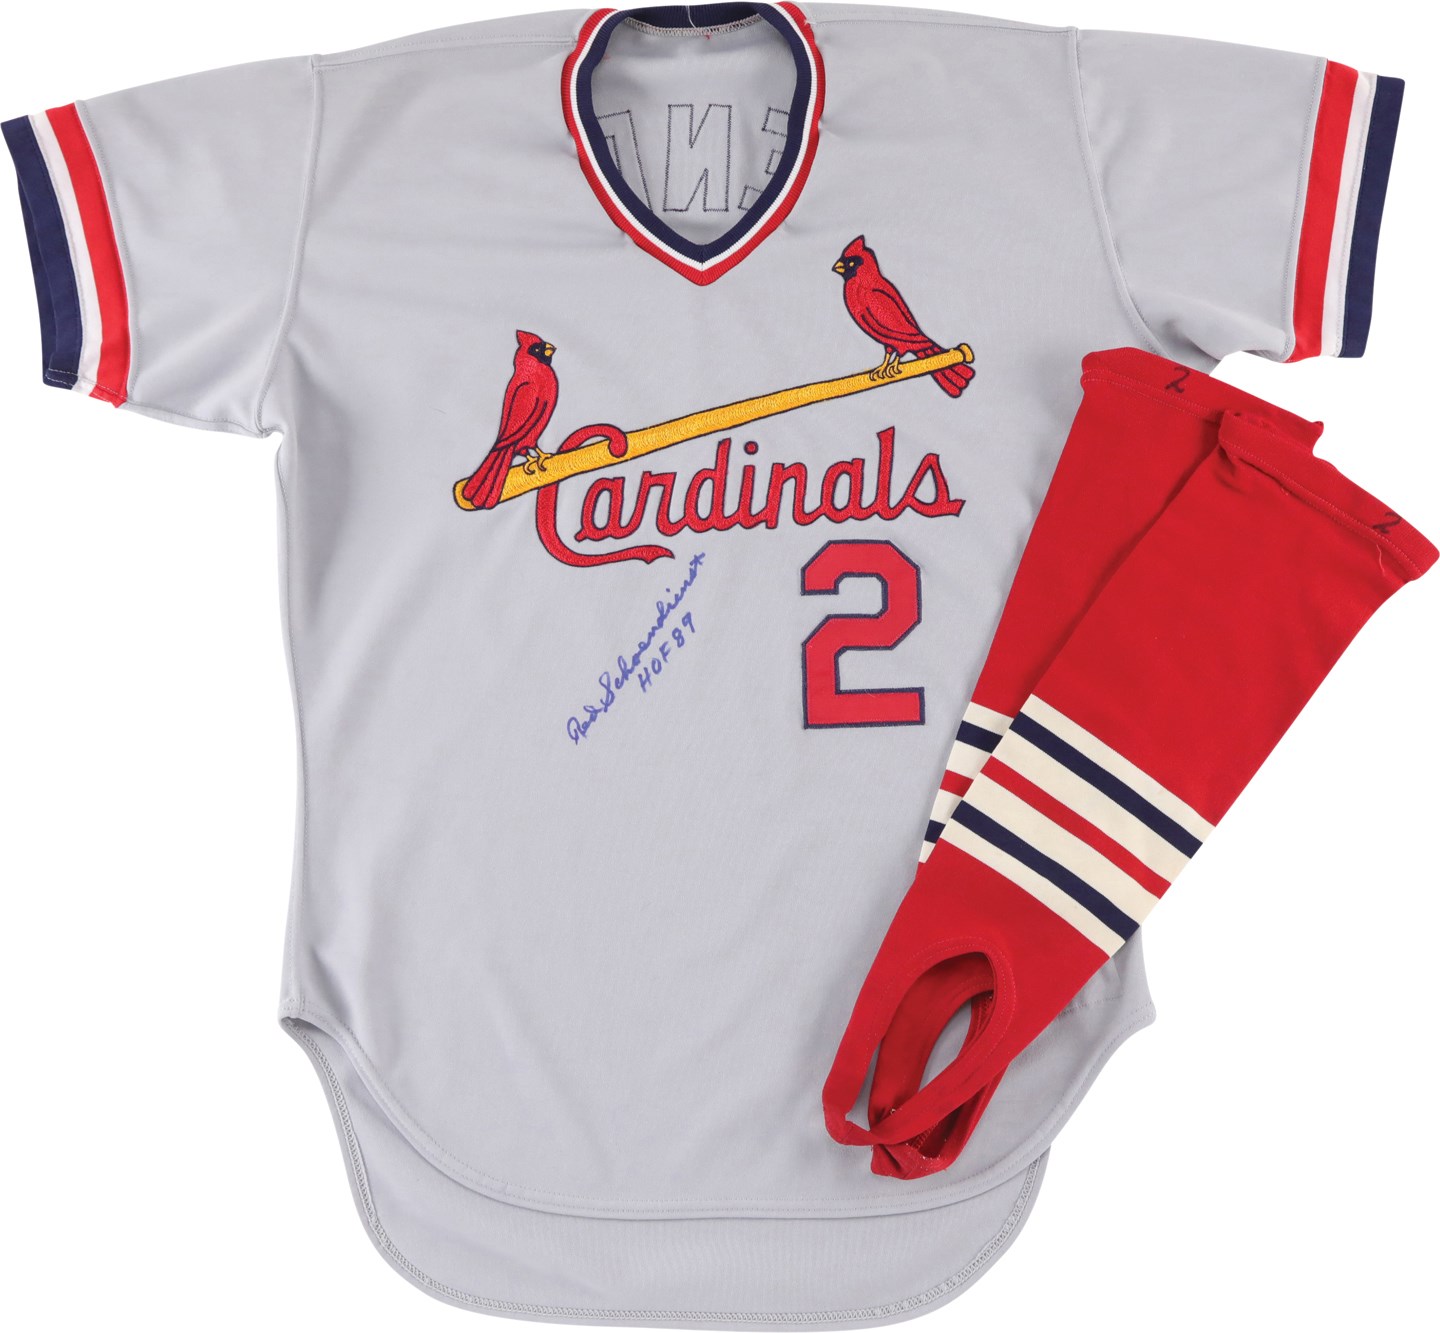 Baseball Equipment - 1986 Red Schoendienst St. Louis Cardinals Game Worn Coach's Jersey w/Stirrups